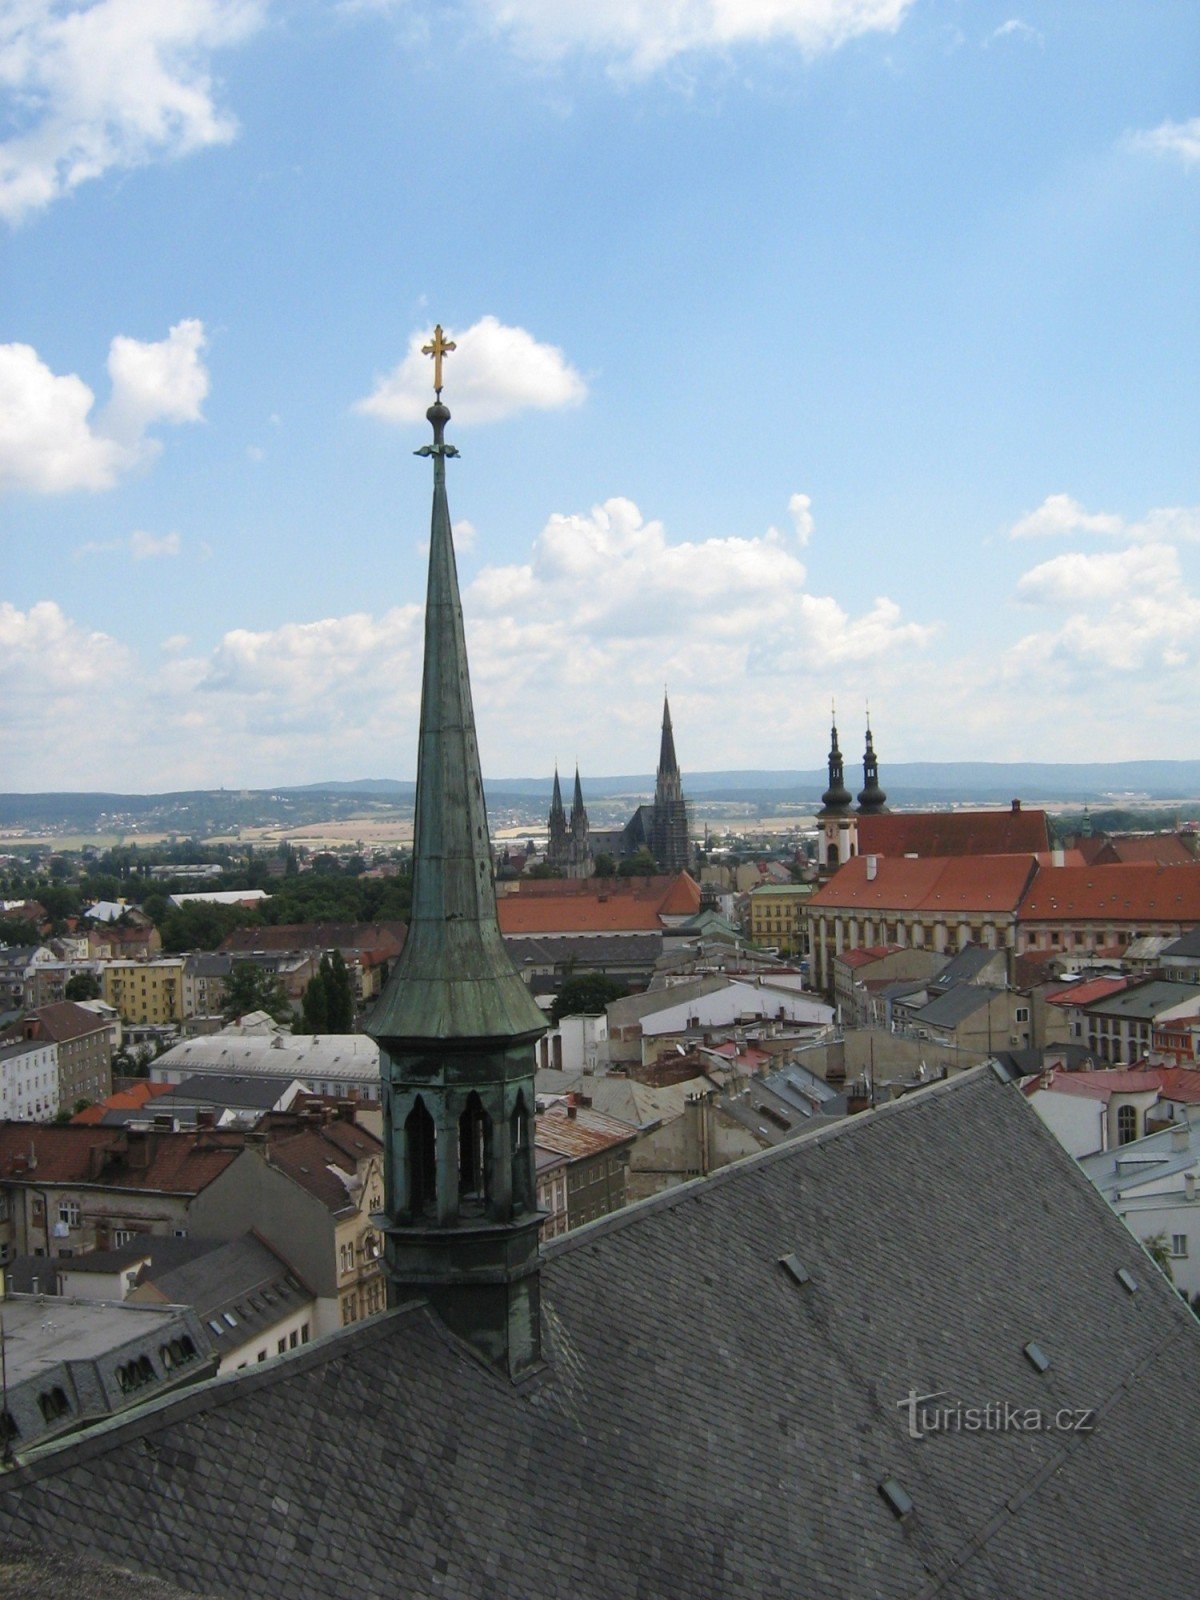 Vista de la ciudad desde la torre de la iglesia de St. Morice